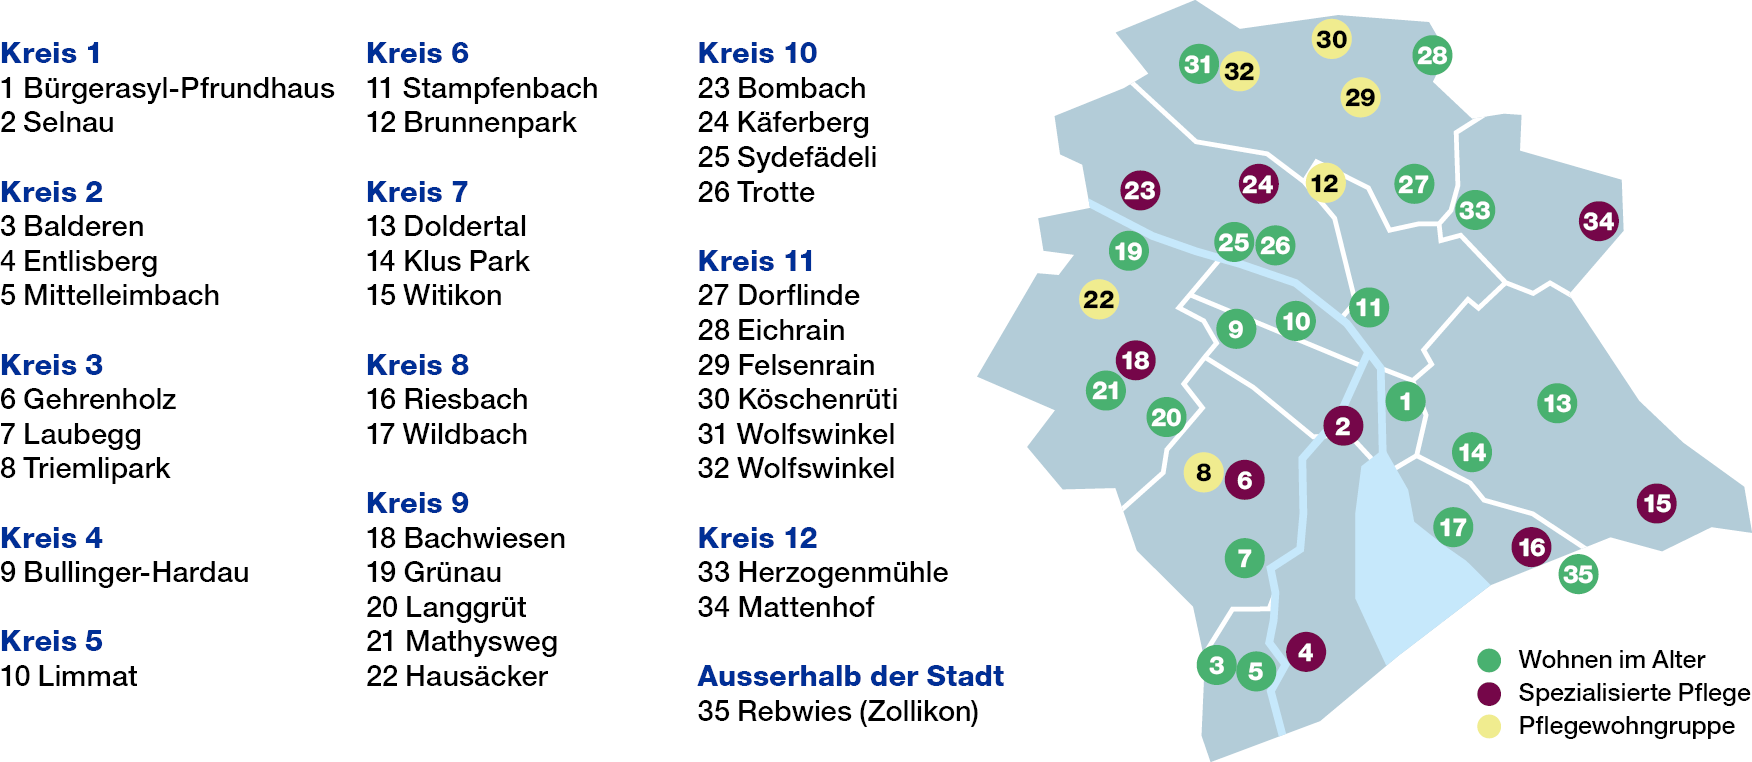 Standortkarte Gesundheitszentren für das Alter der Stadt Zürich